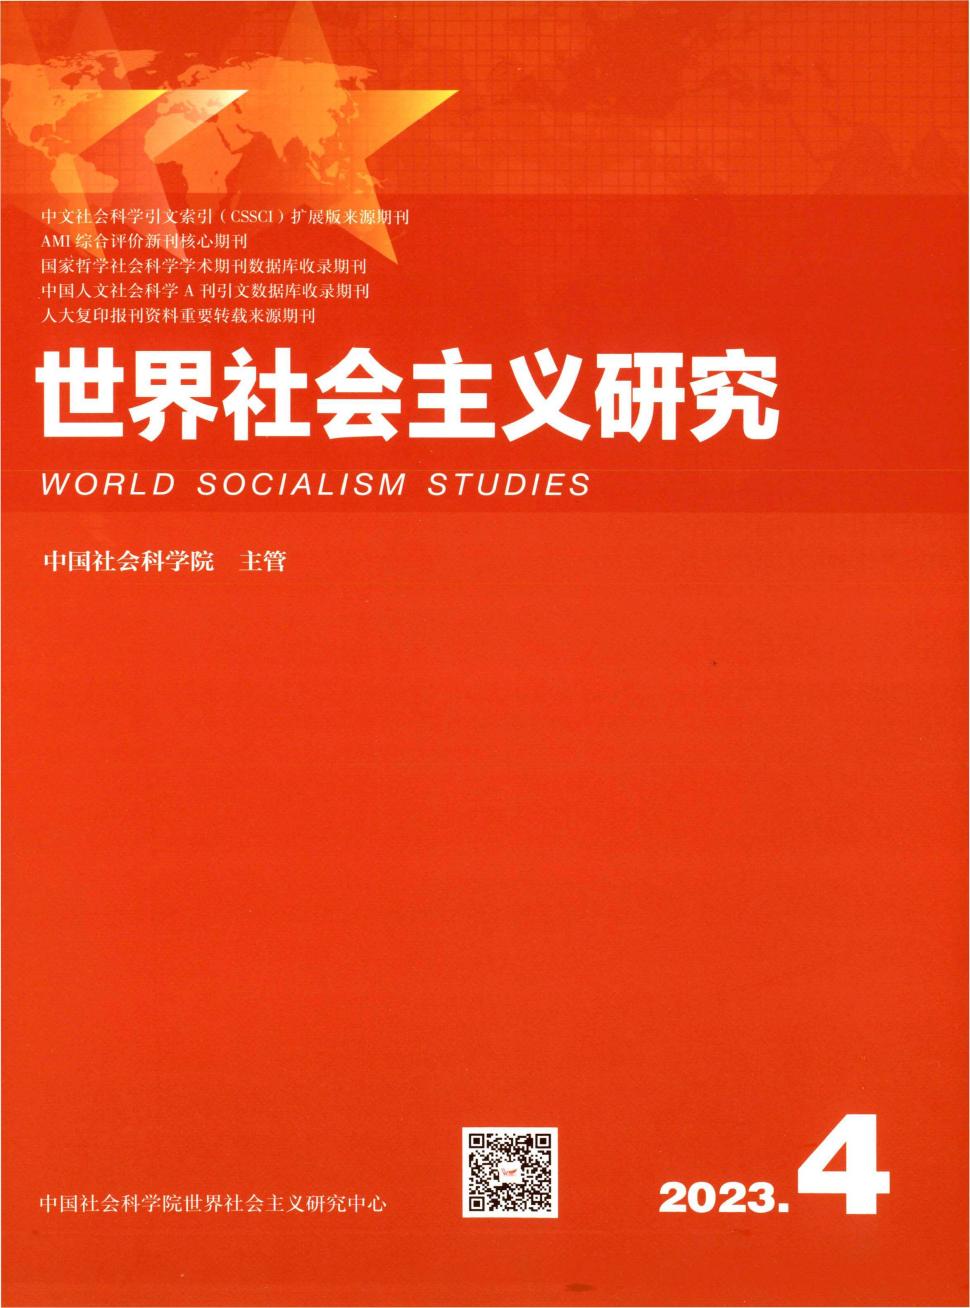 世界社会主义研究期刊